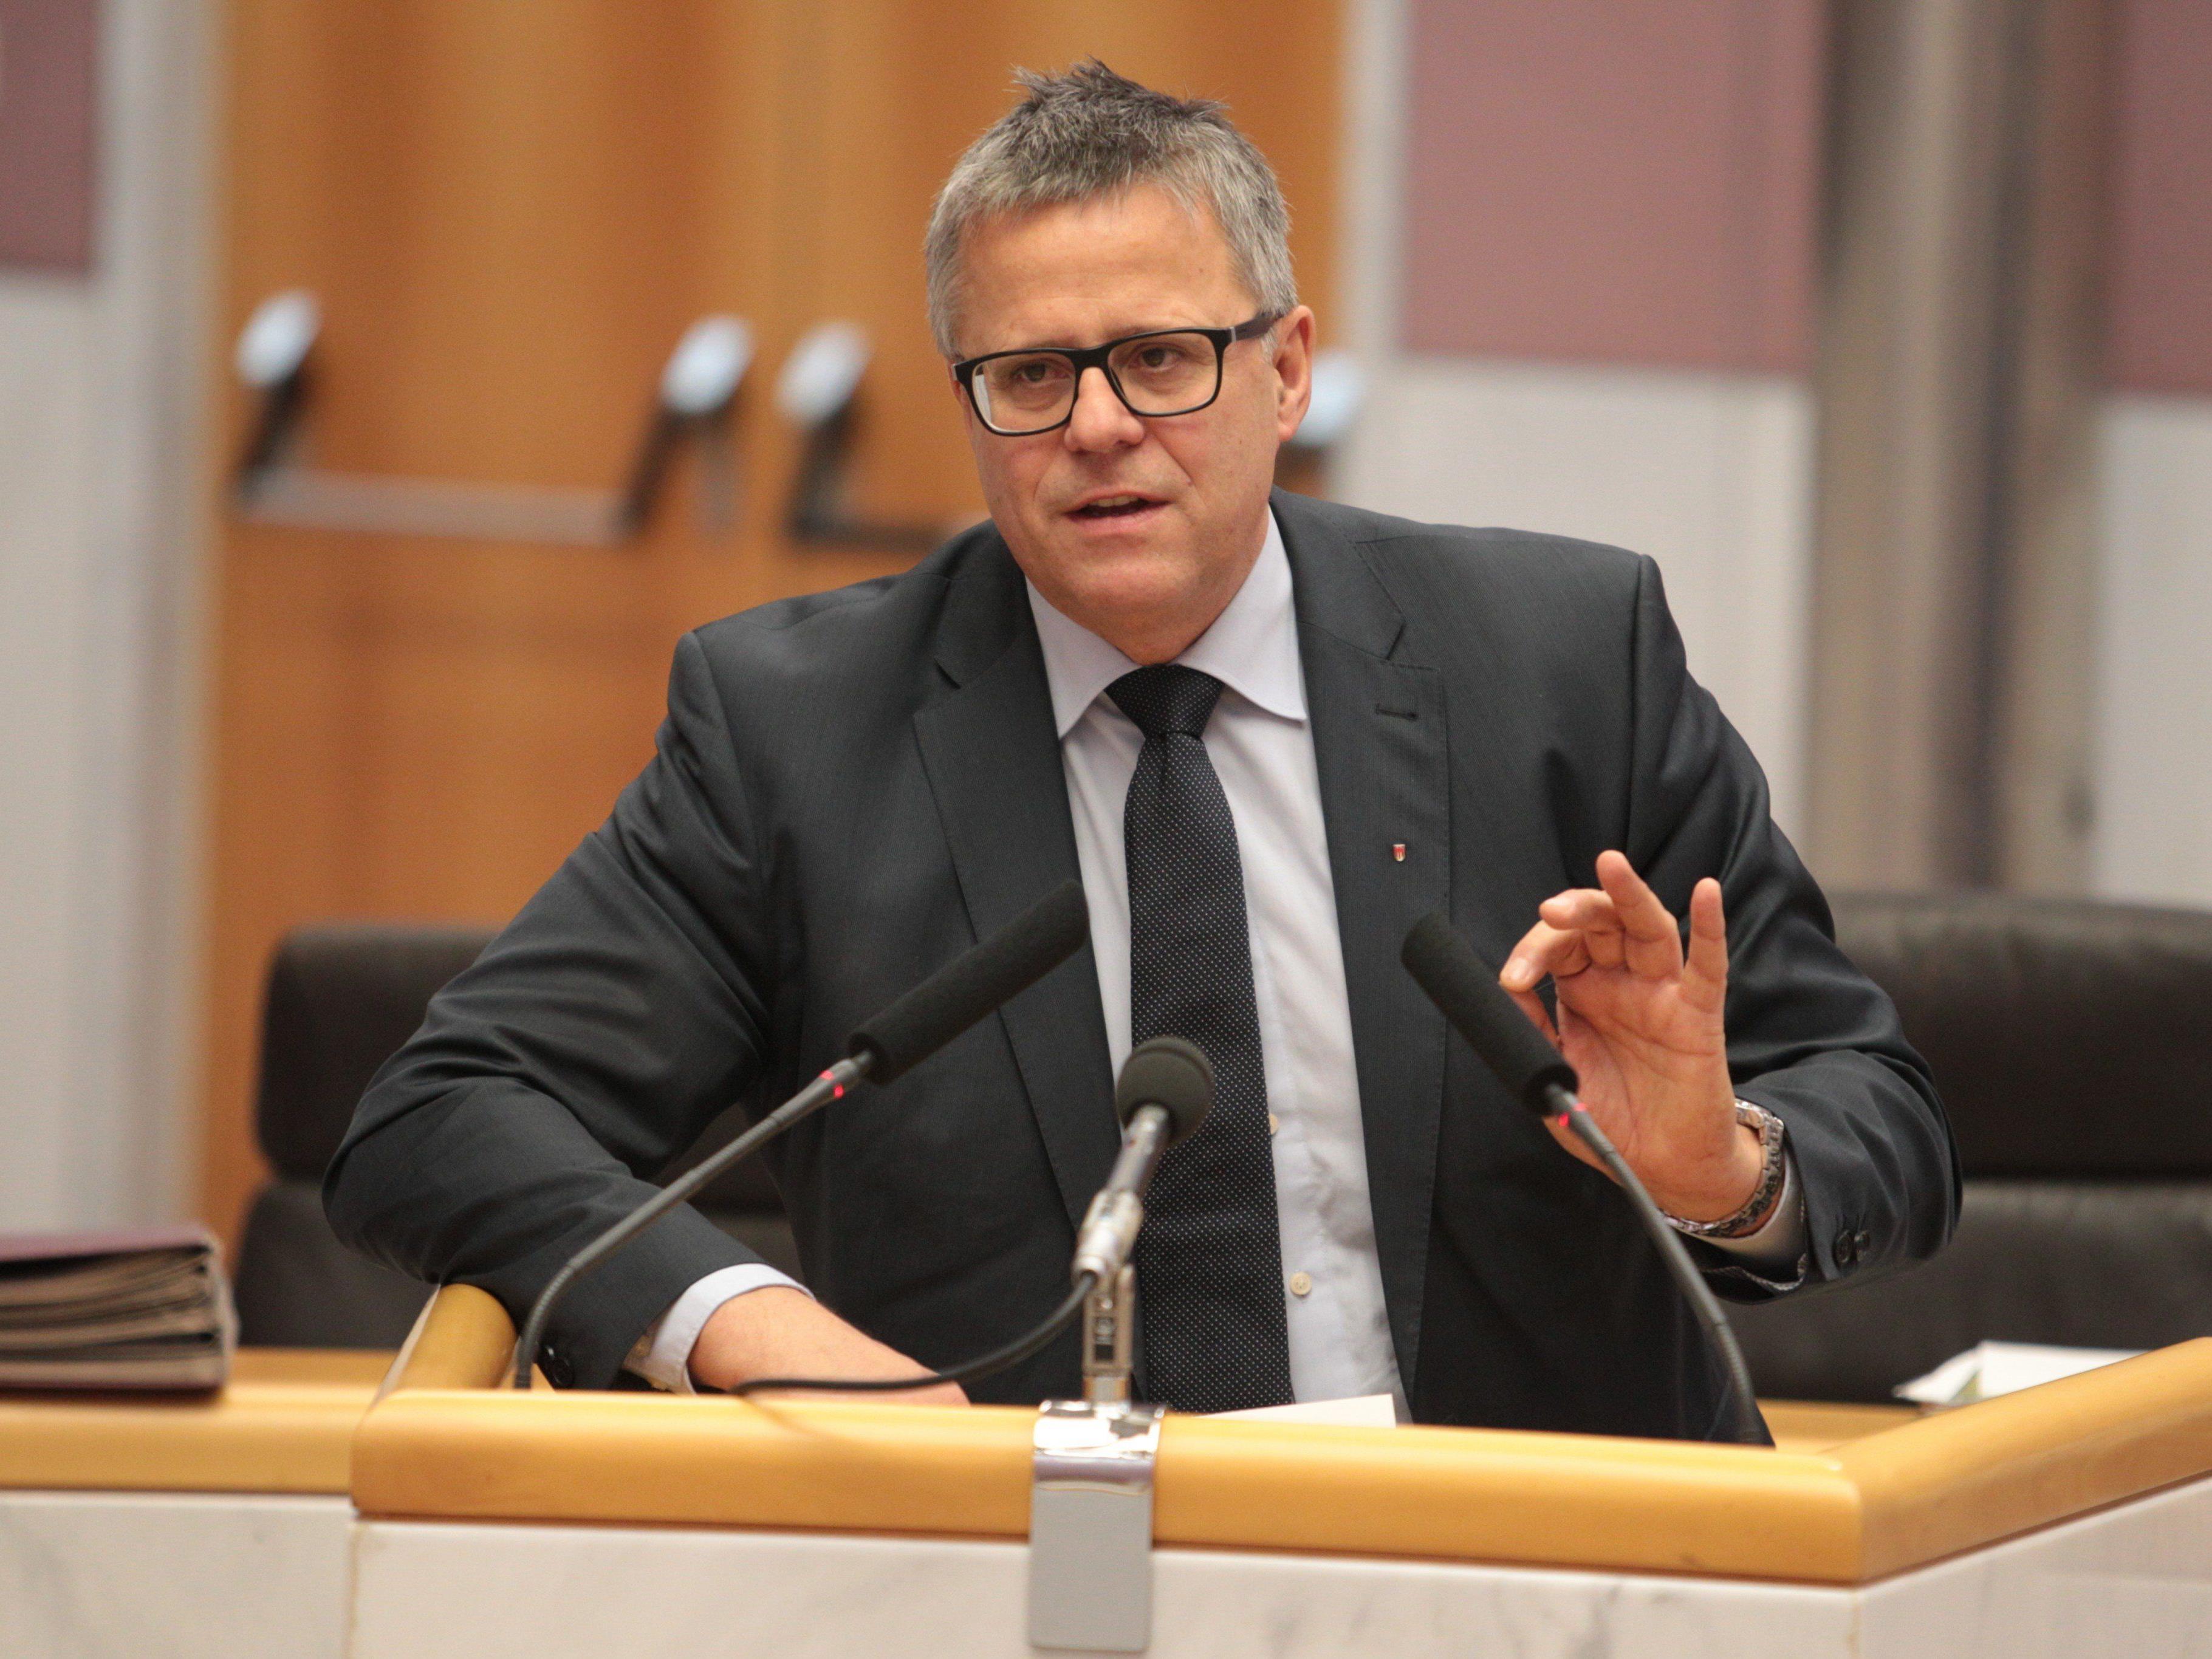 Der Vorarlberger ÖVP-Klubobmann Frühstück kann den Wunsch nach Neuwahlen von Michael Ritsch (SPÖ) nicht verstehen.